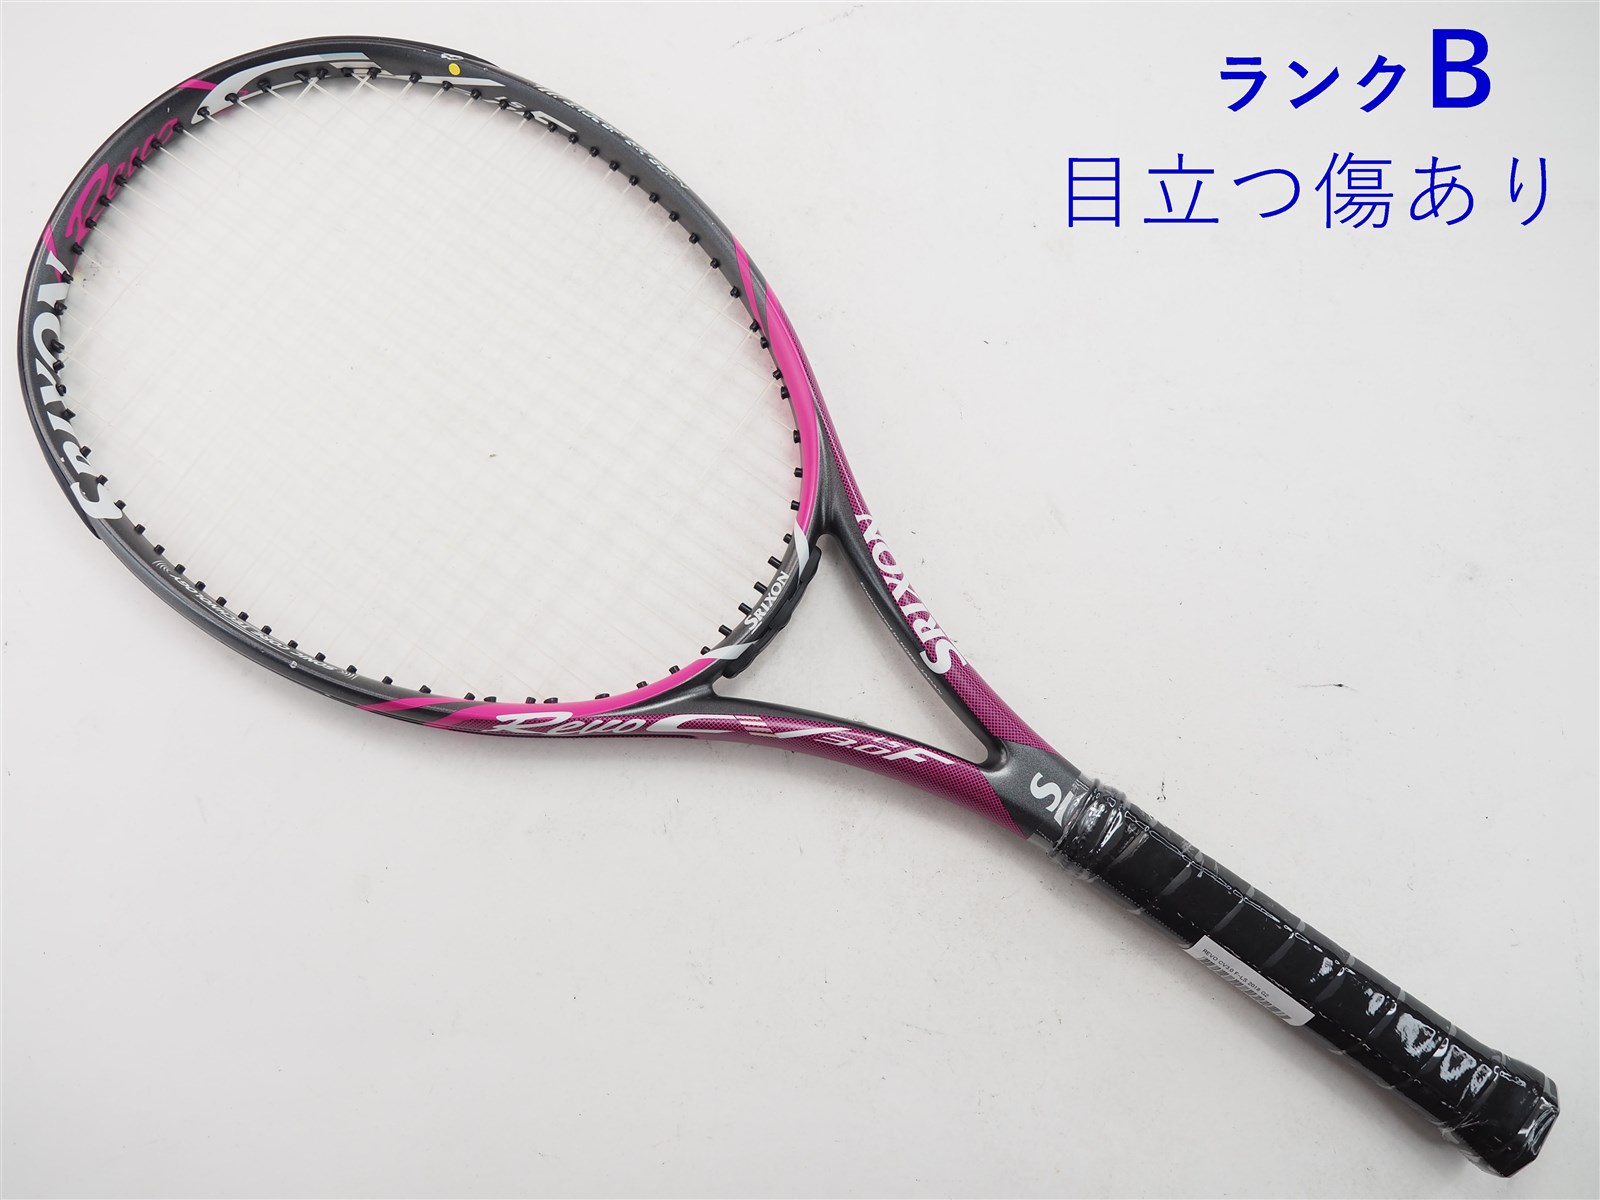 317ｇ張り上げガット状態テニスラケット スリクソン レヴォ シーブイ3.0 エフ 2018年モデル (G3)SRIXON REVO CV3.0 F 2018